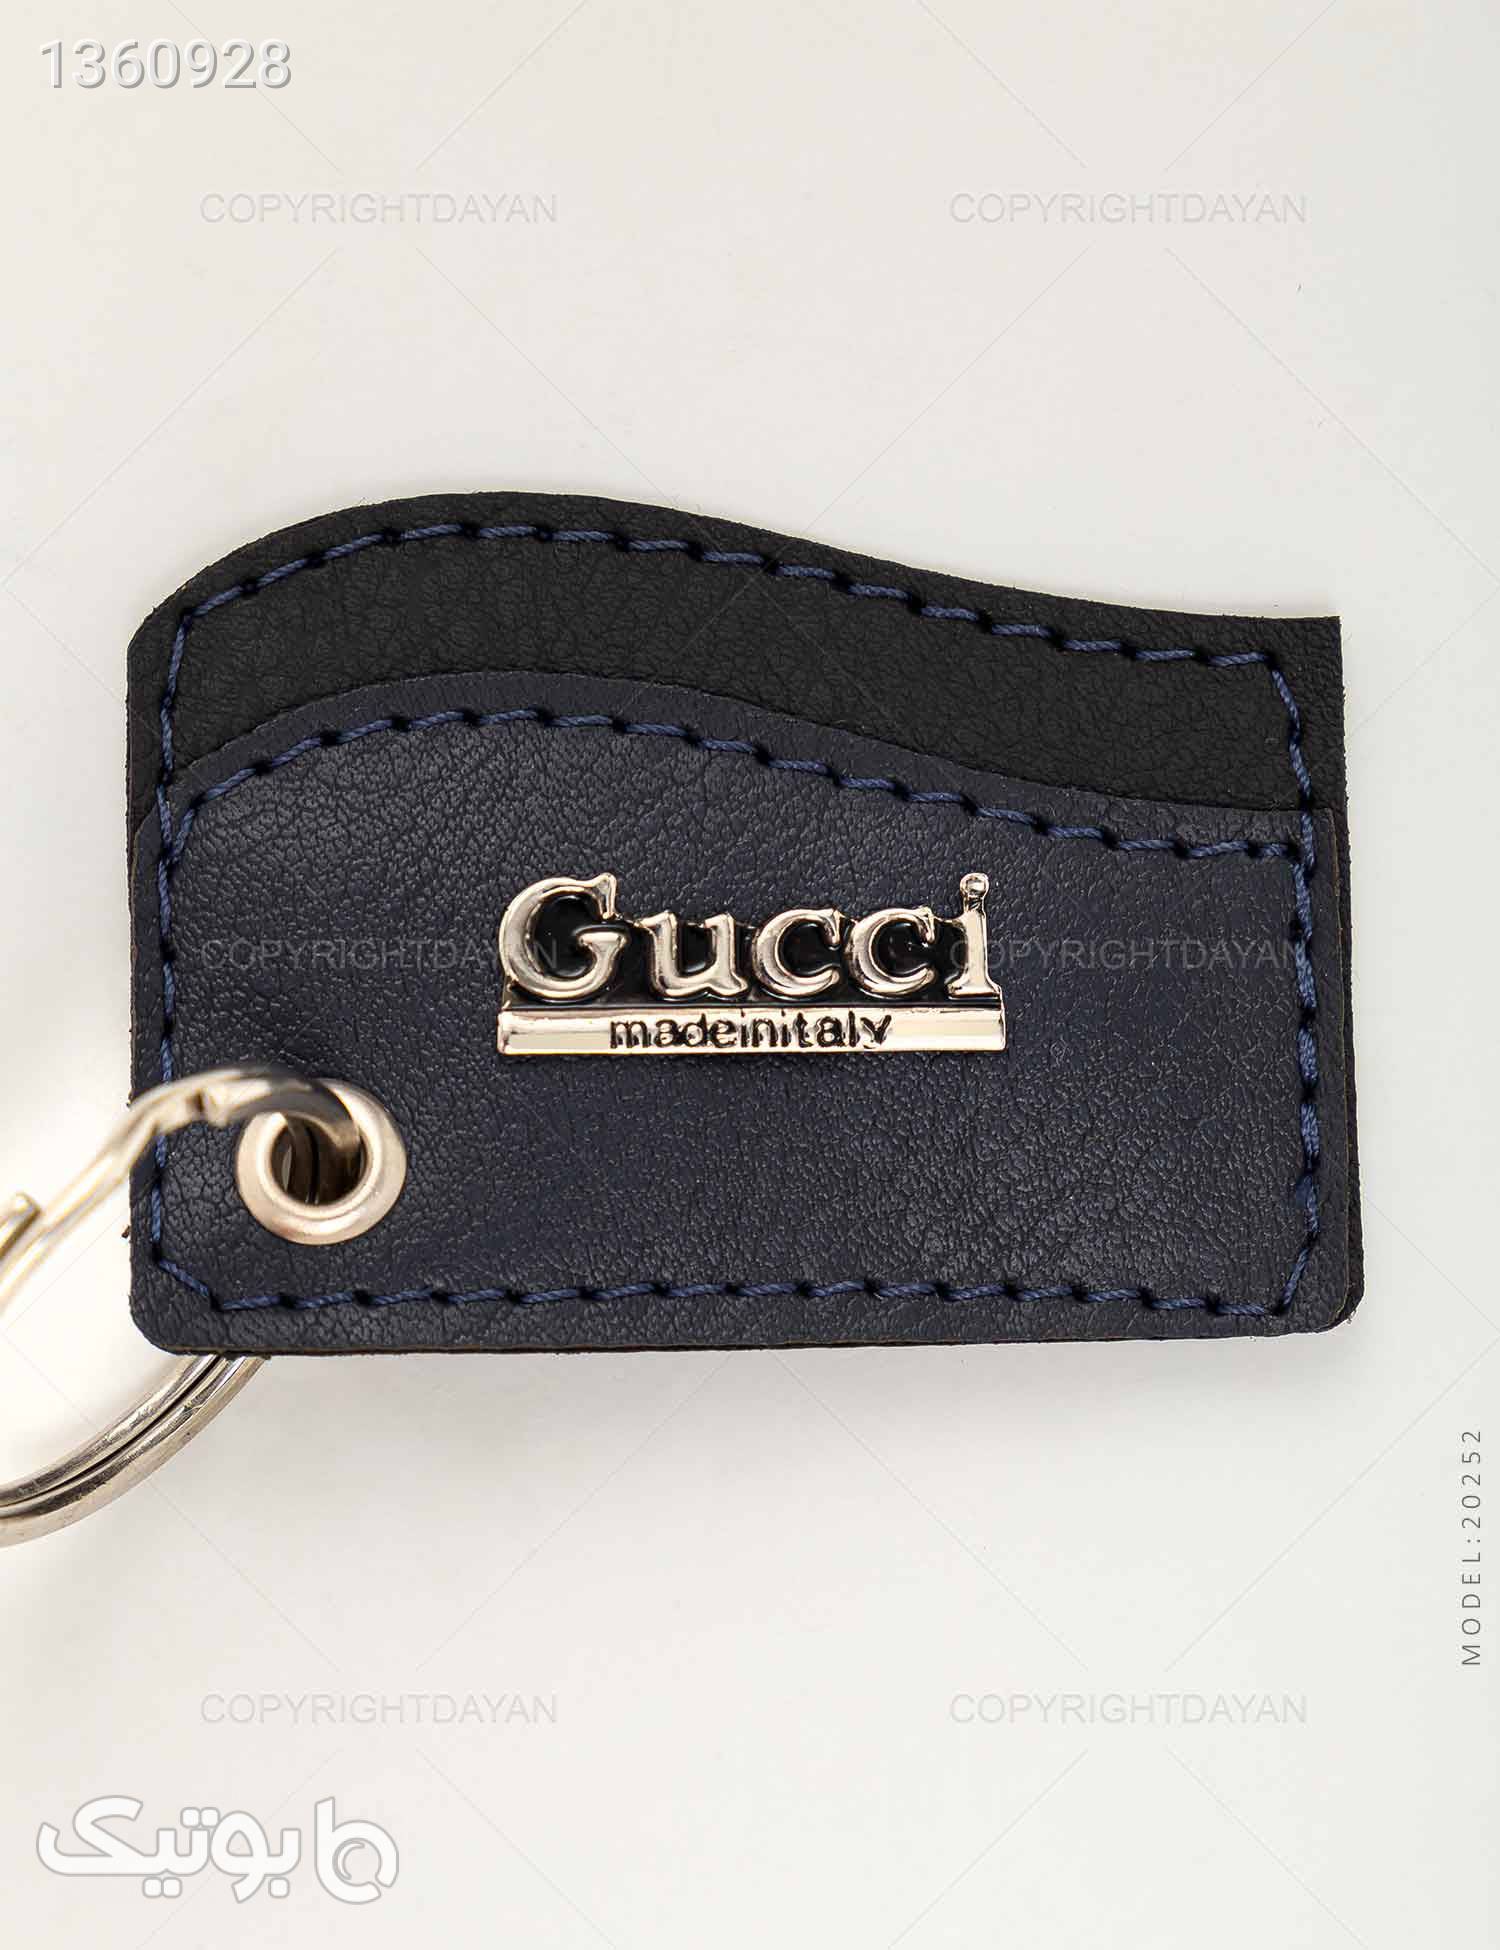 ست چرمی Gucci مدل 20252 مشکی کیف پول و جا کارتی